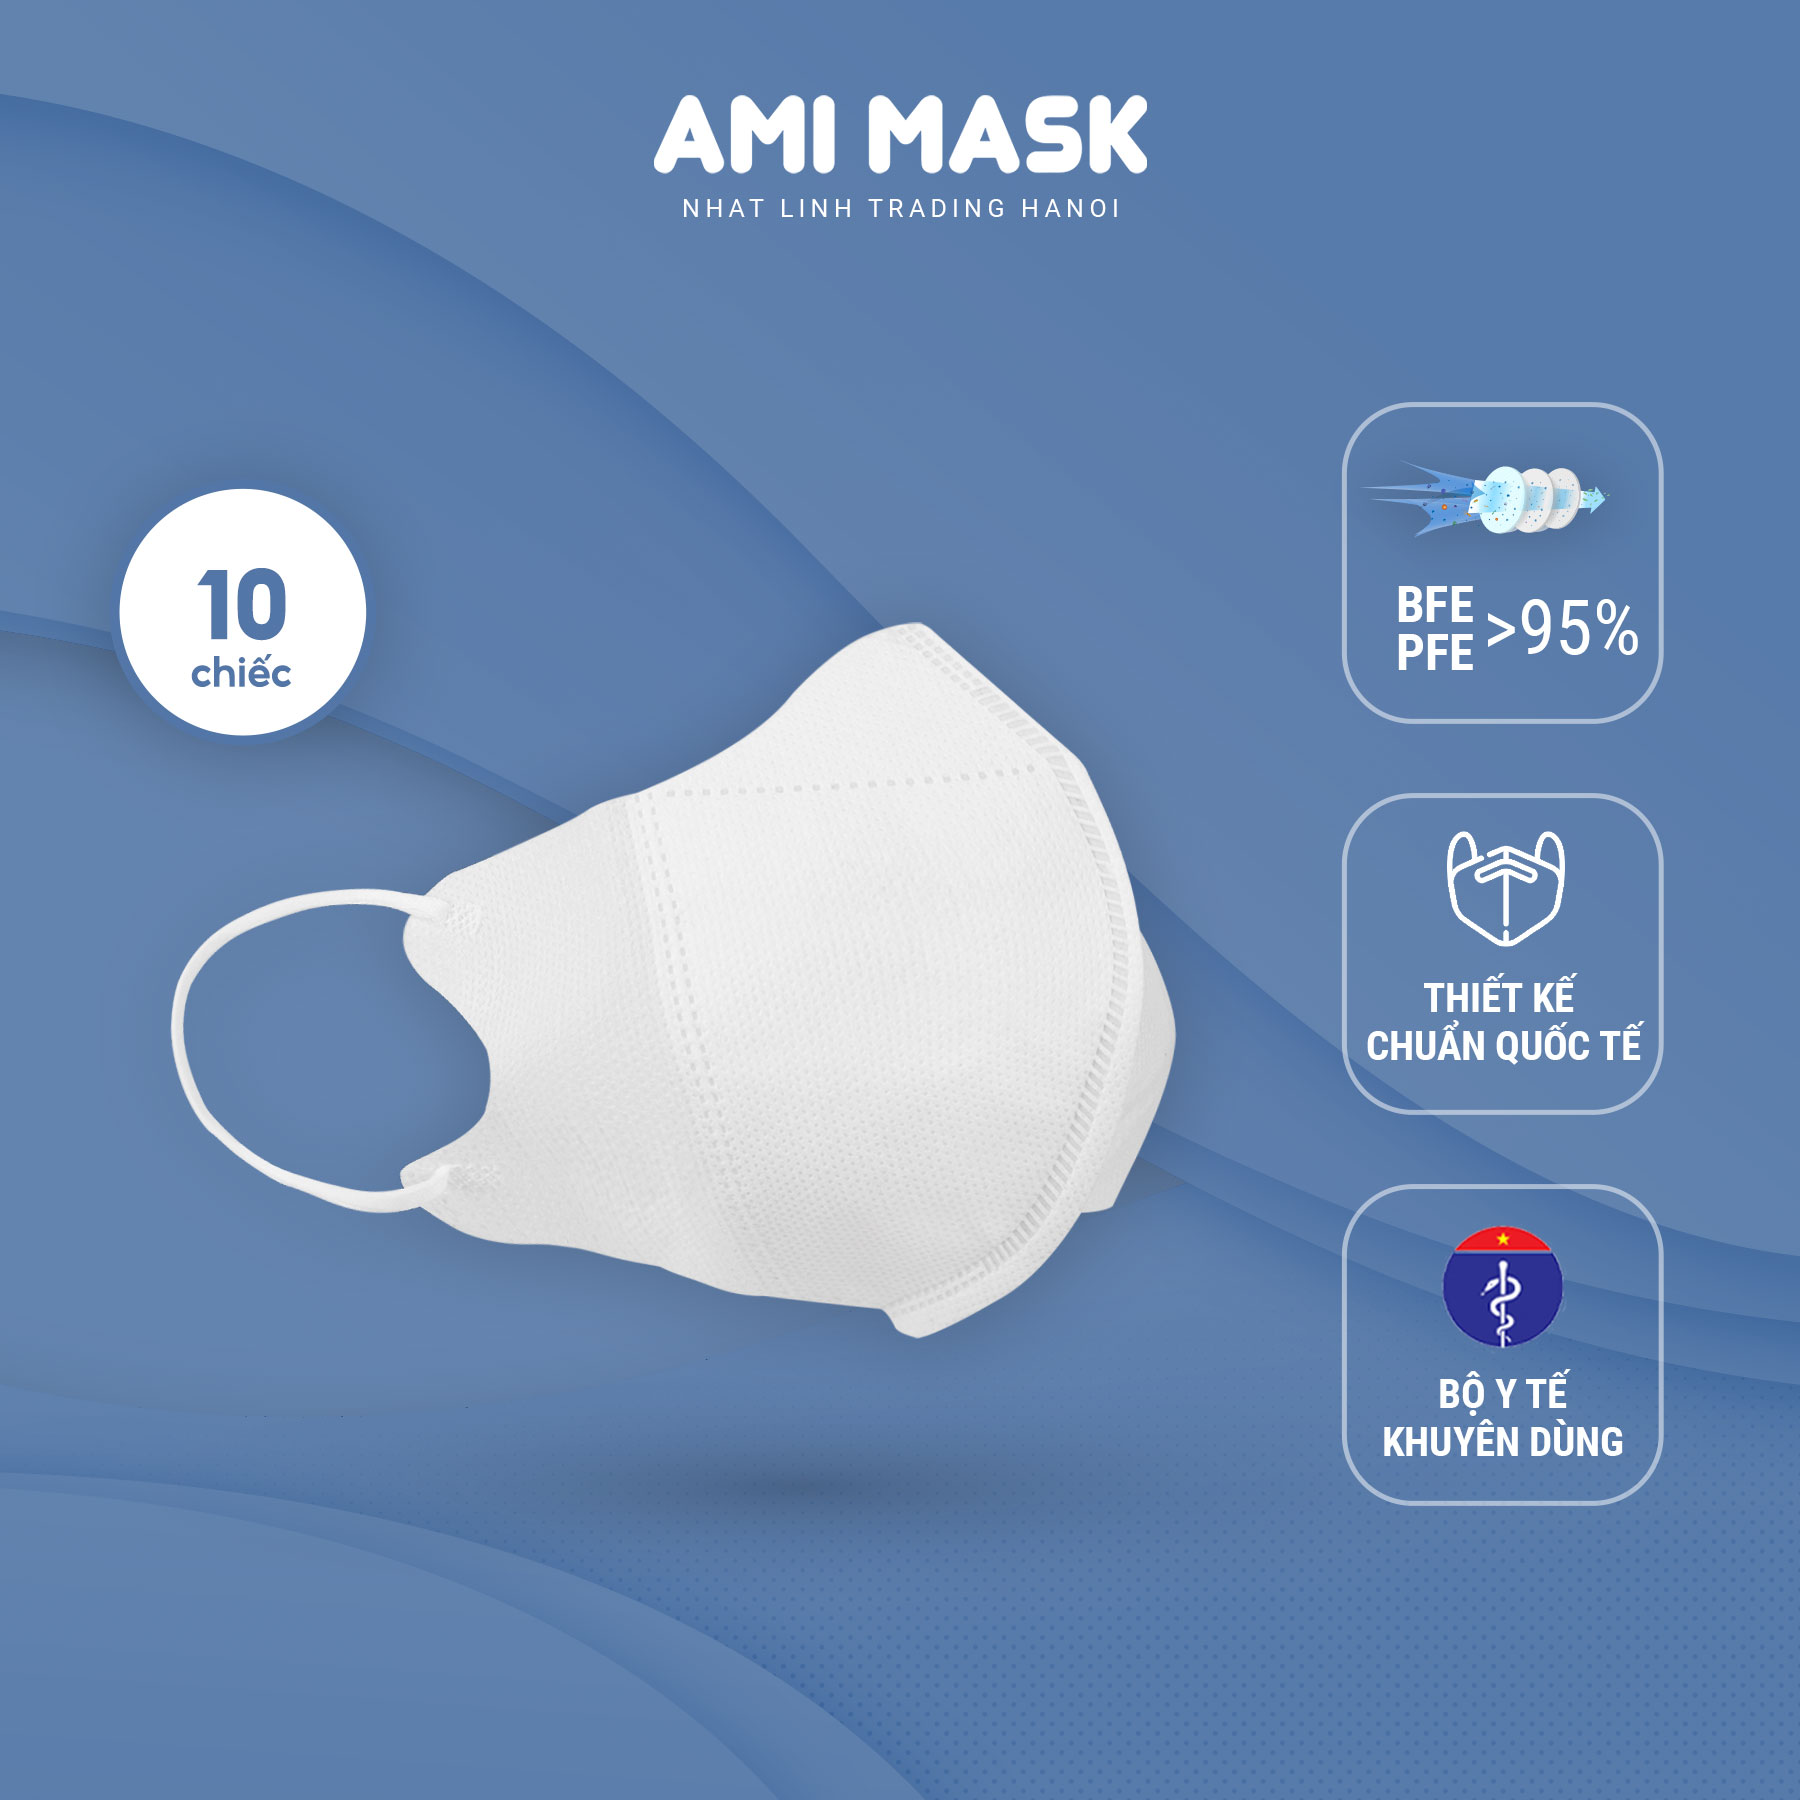 [10 chiếc] Khẩu trang y tế AMI 5D Mask 3 lớp đạt chuẩn, kiểu dáng khẩu trang 5D ôm gọn kháng khuẩn, chống bụi mịn